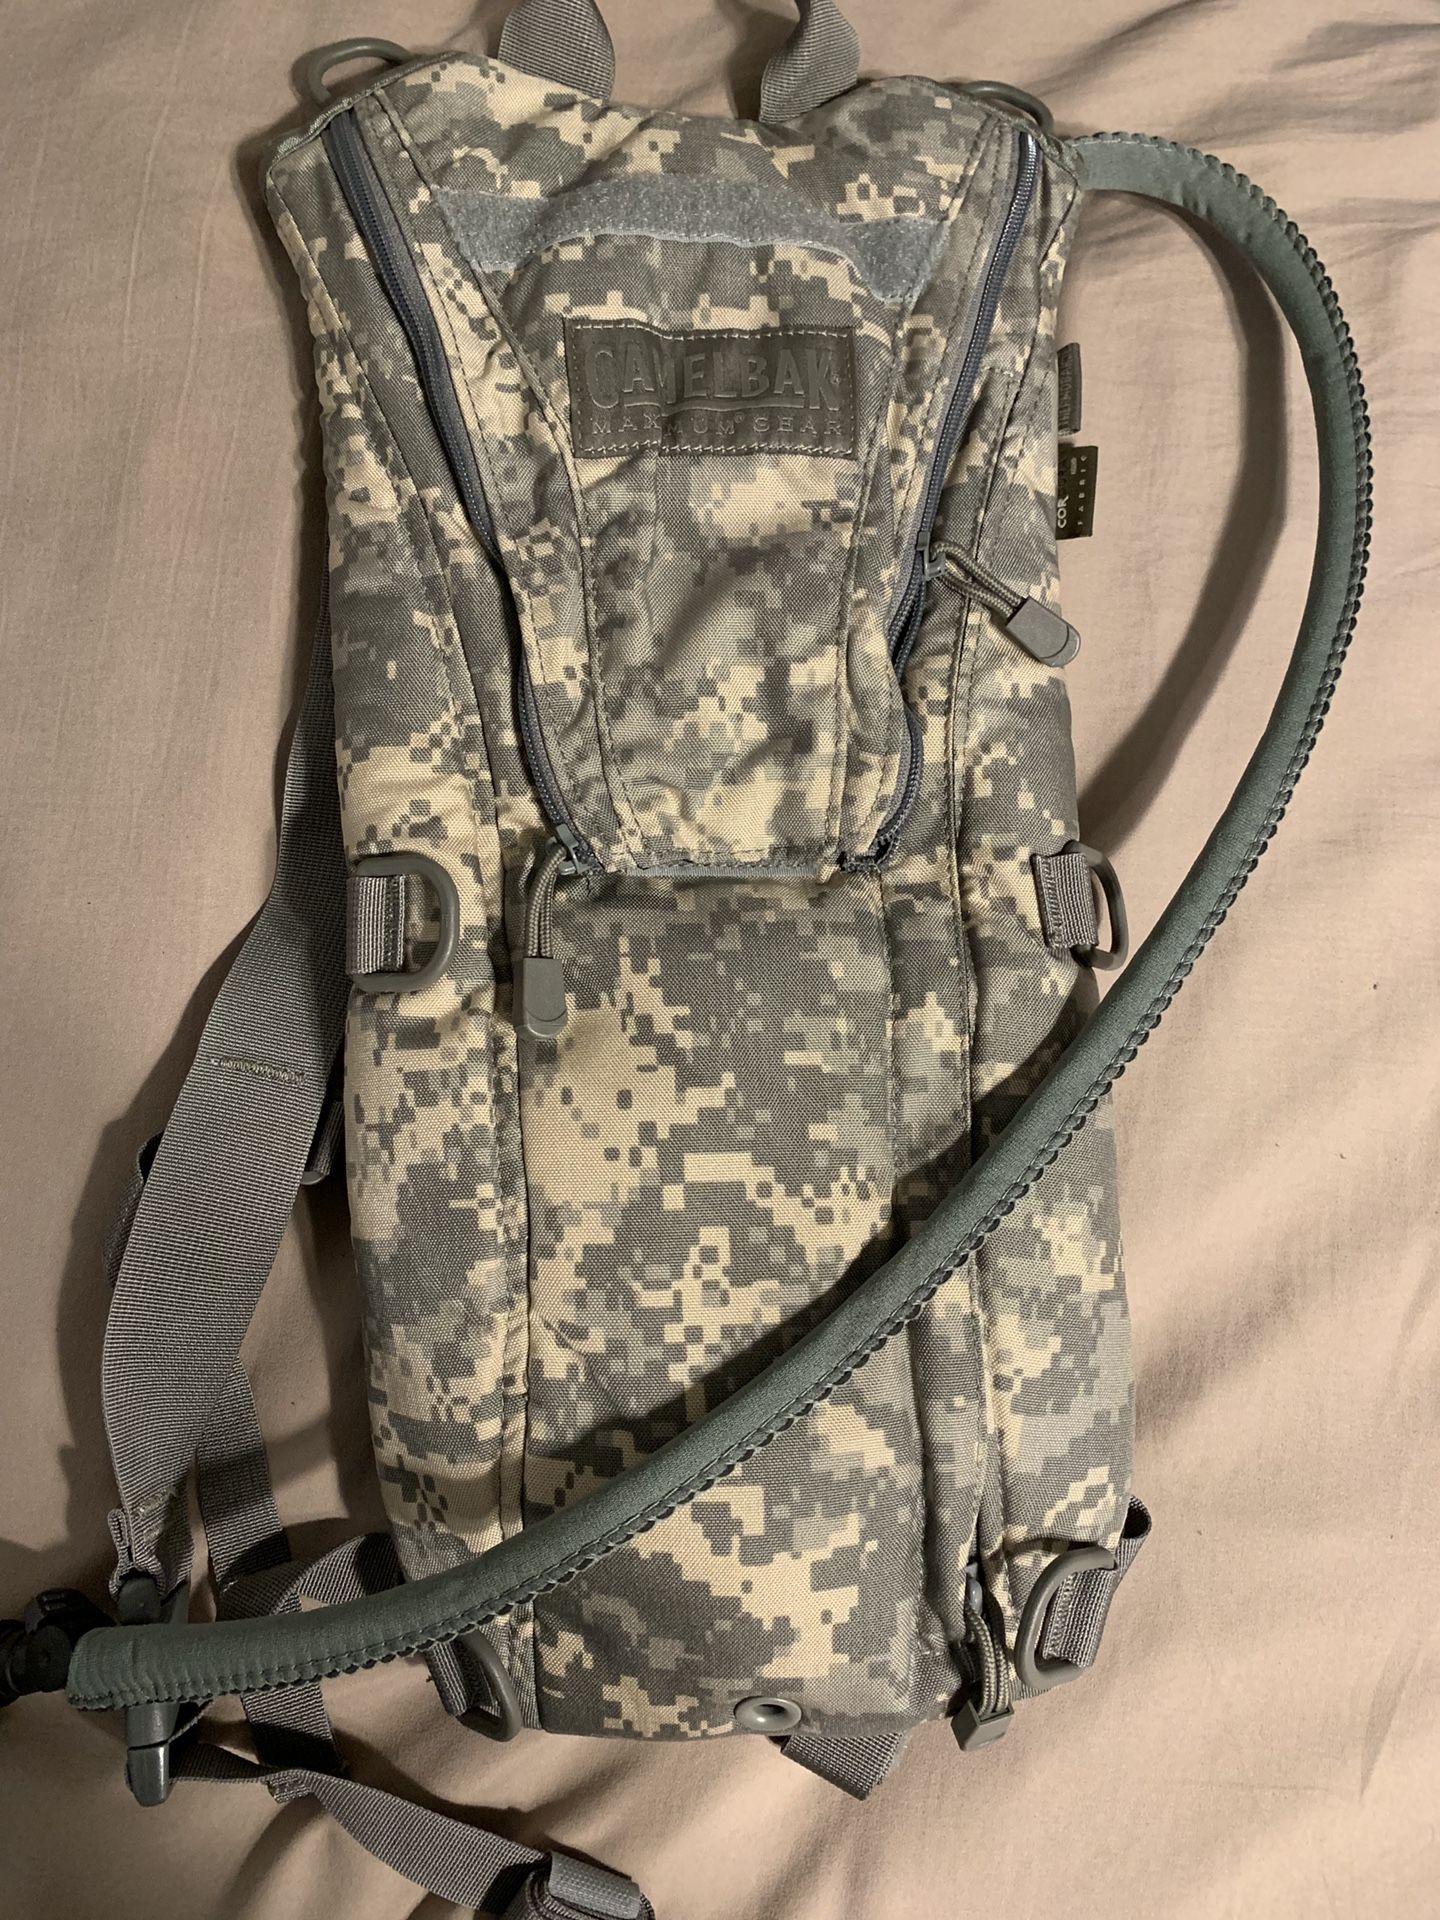 Camelbak Backpack - Maximum Gear